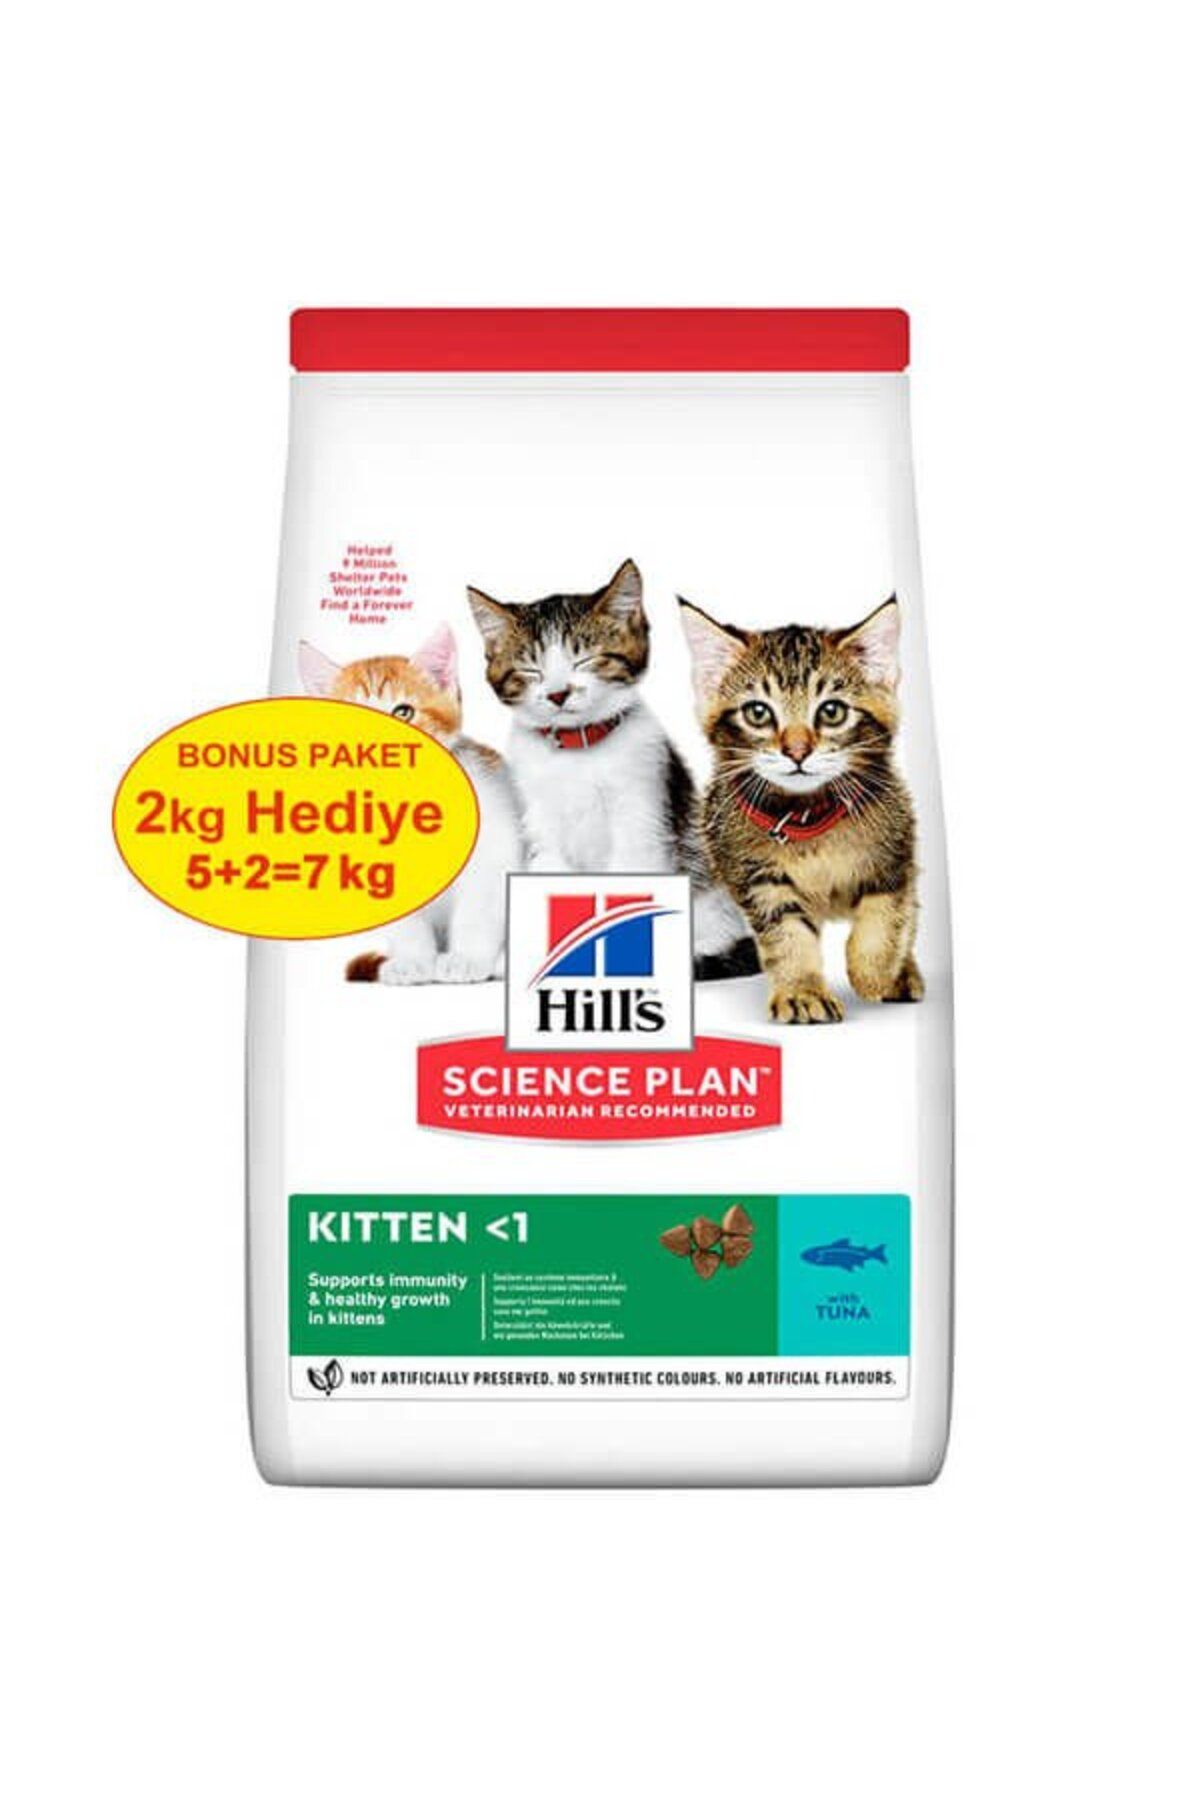 Hill's Kitten Ton Balıklı Yavru Kedi Maması 5 Kg ( 2 Kg Hediyeli) - Tp739975